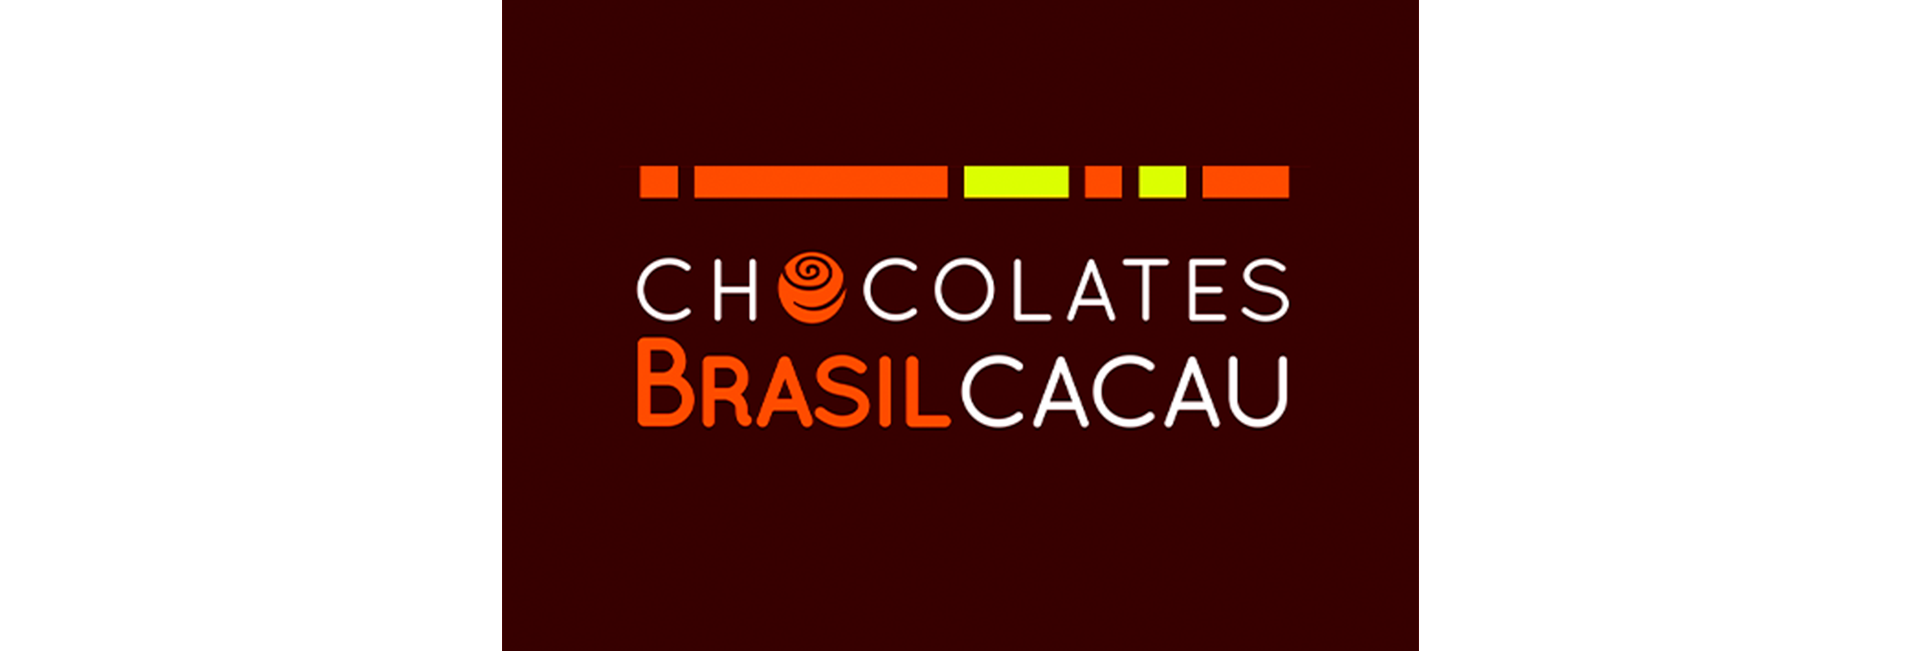 Lojas-Chocolates-brasil-cacau